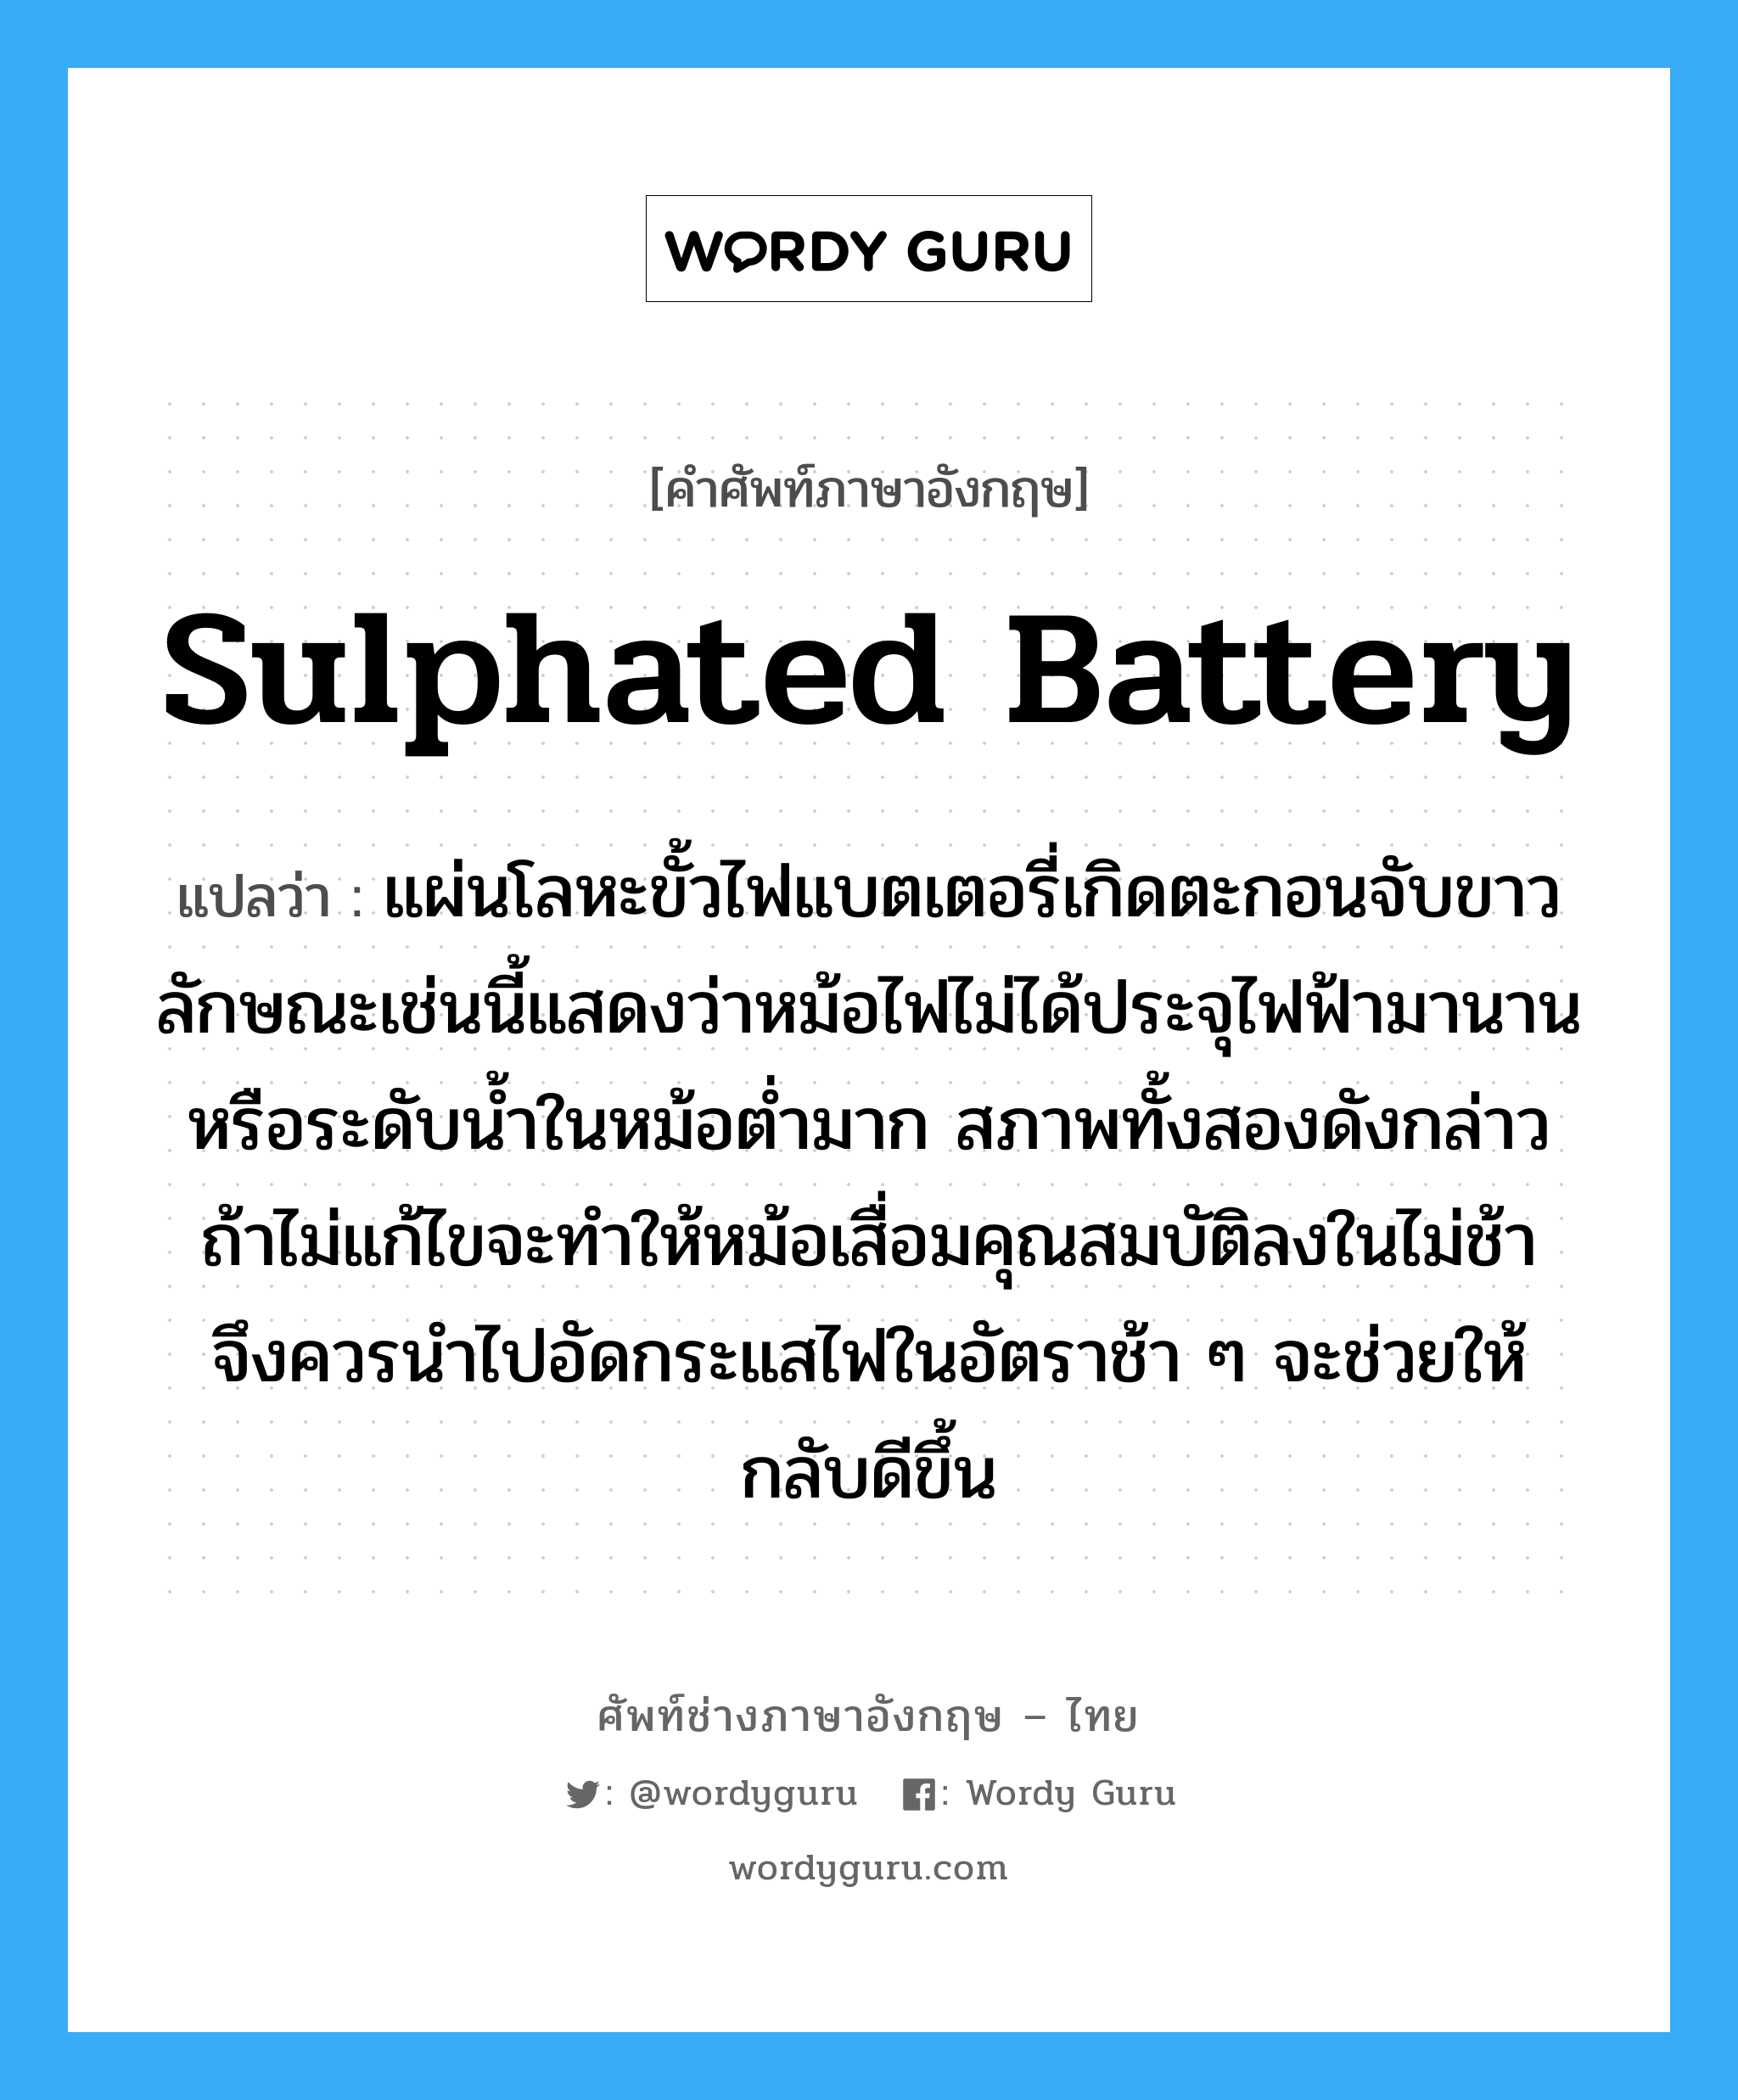 sulphated battery แปลว่า?, คำศัพท์ช่างภาษาอังกฤษ - ไทย sulphated battery คำศัพท์ภาษาอังกฤษ sulphated battery แปลว่า แผ่นโลหะขั้วไฟแบตเตอรี่เกิดตะกอนจับขาว ลักษณะเช่นนี้แสดงว่าหม้อไฟไม่ได้ประจุไฟฟ้ามานานหรือระดับน้ำในหม้อต่ำมาก สภาพทั้งสองดังกล่าว ถ้าไม่แก้ไขจะทำให้หม้อเสื่อมคุณสมบัติลงในไม่ช้า จึงควรนำไปอัดกระแสไฟในอัตราช้า ๆ จะช่วยให้กลับดีขึ้น